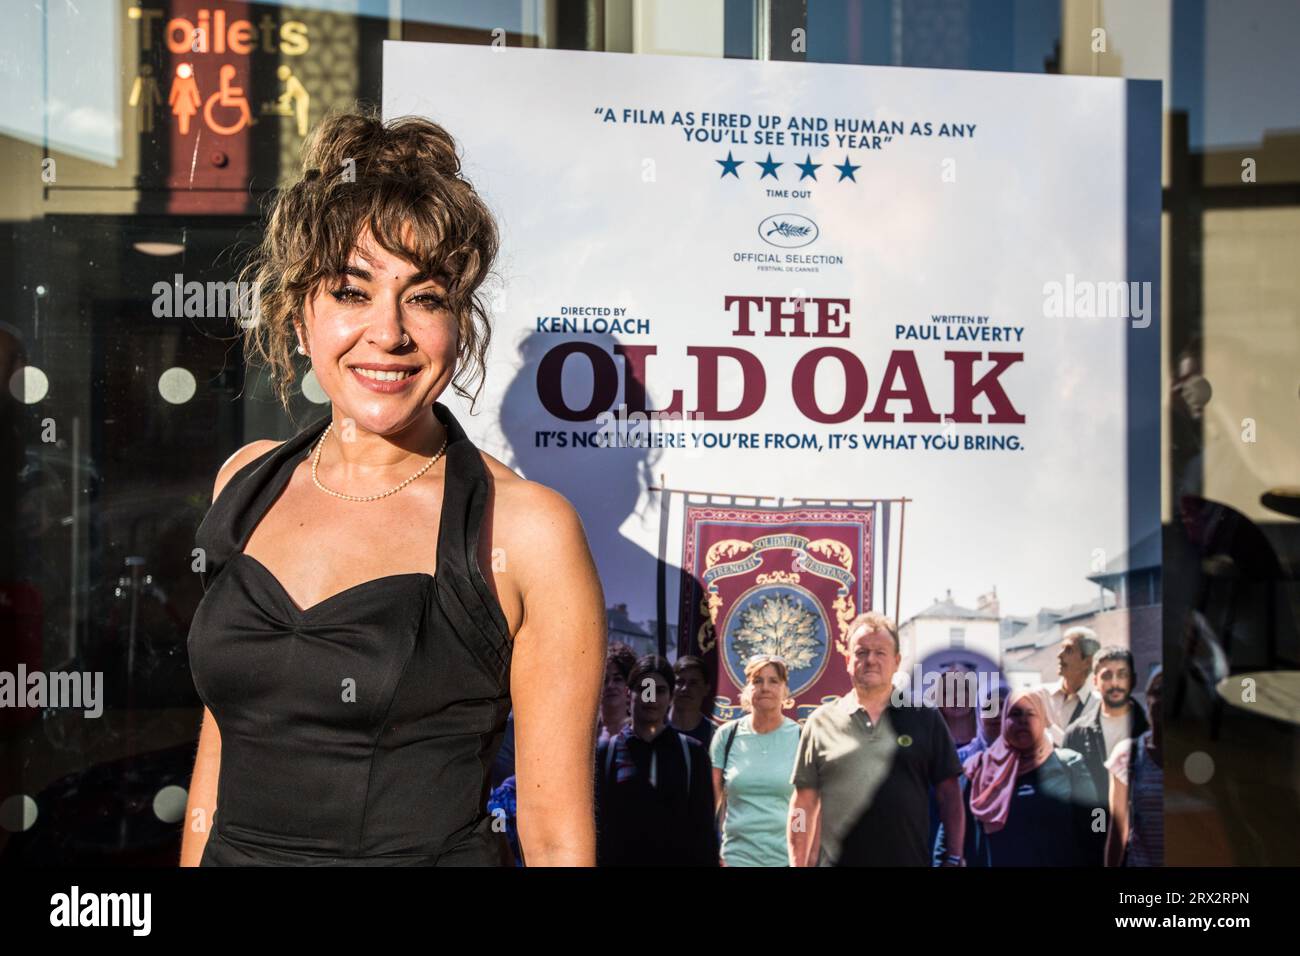 Schauspieler Claire Rogerson beim Premier of the Ken Loach Film „The Old Oak“ im Gala Theatre in Durham City, Großbritannien. 21/9/2023. Foto: Stuart Boulton Stockfoto